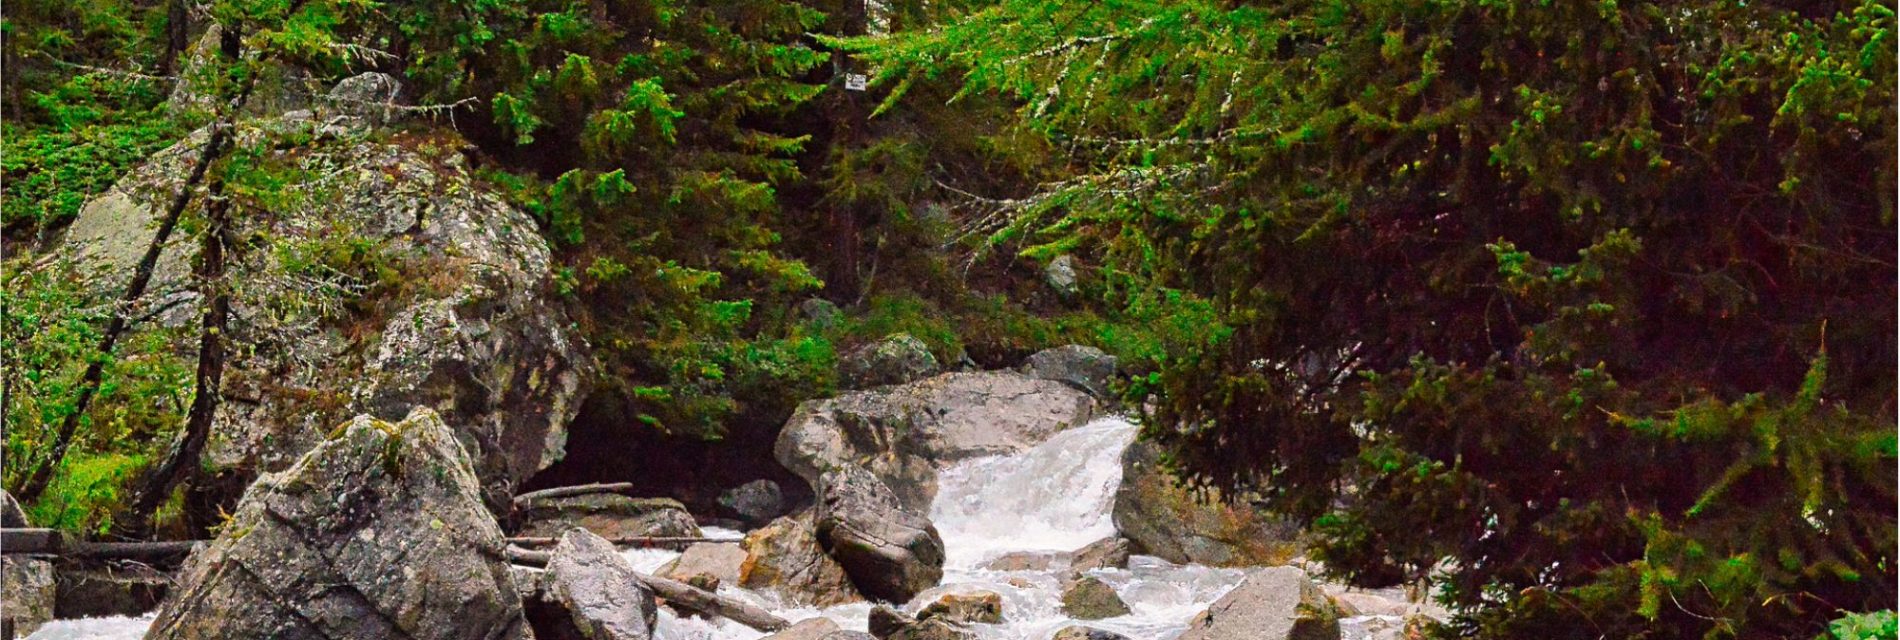 Résidence de tourisme 3*. Eau de sources en cascade dans les roches et traversant la forêt